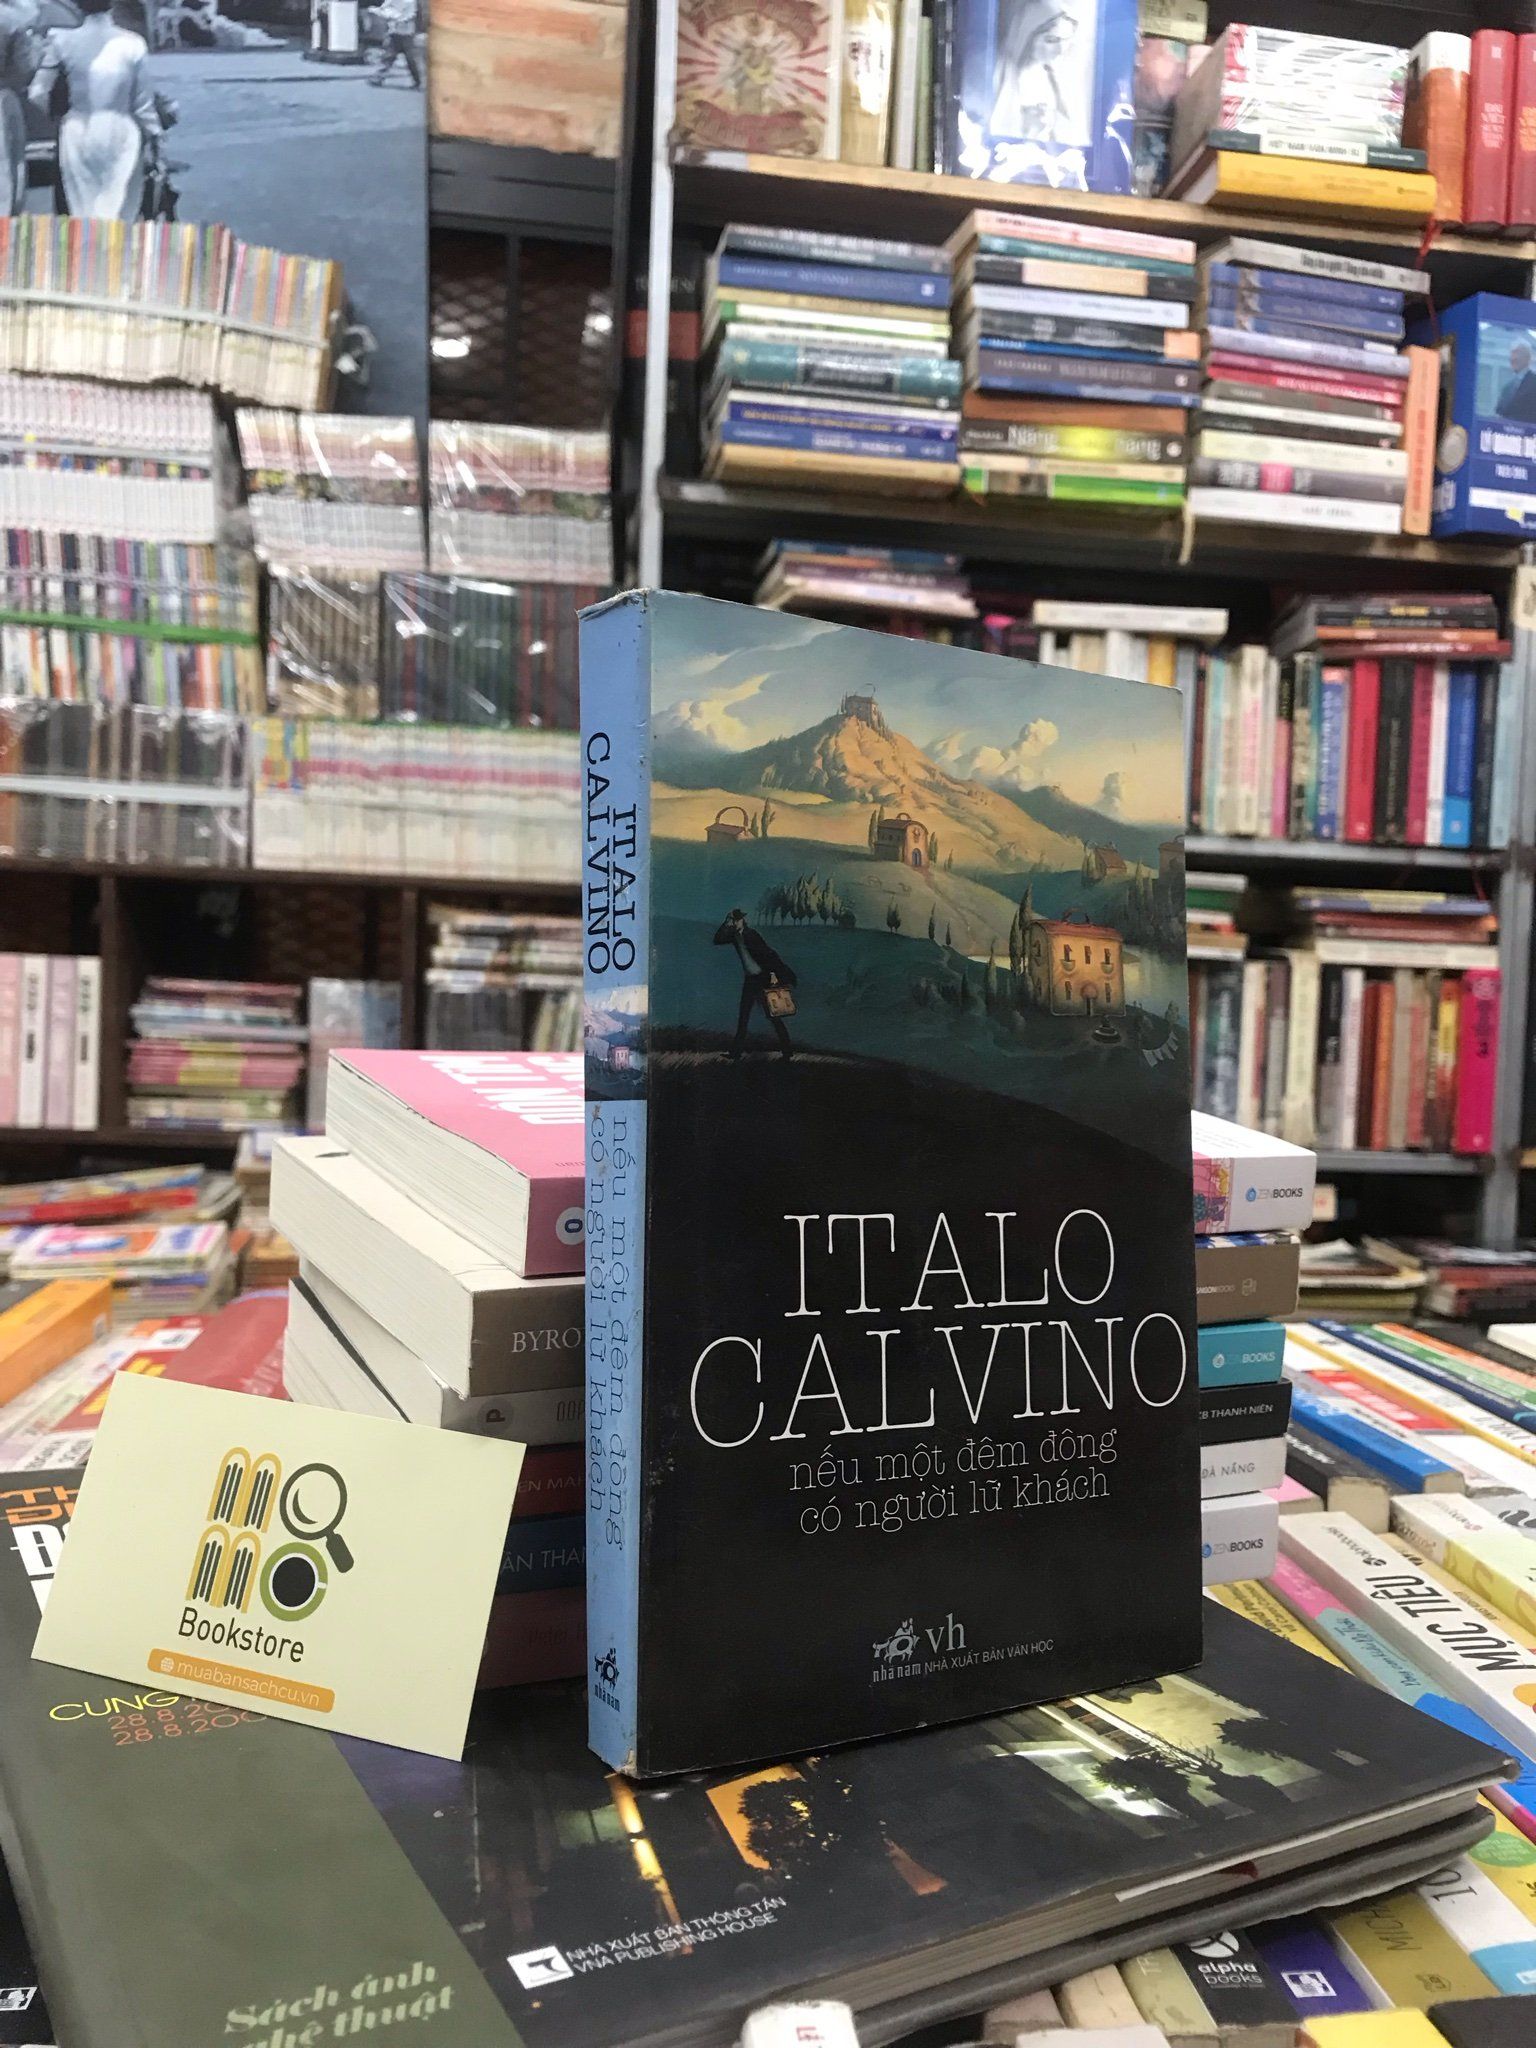  NẾU ĐÊM ĐÔNG CÓ NGƯỜI LỮ KHÁCH - ITALO CALVINO 